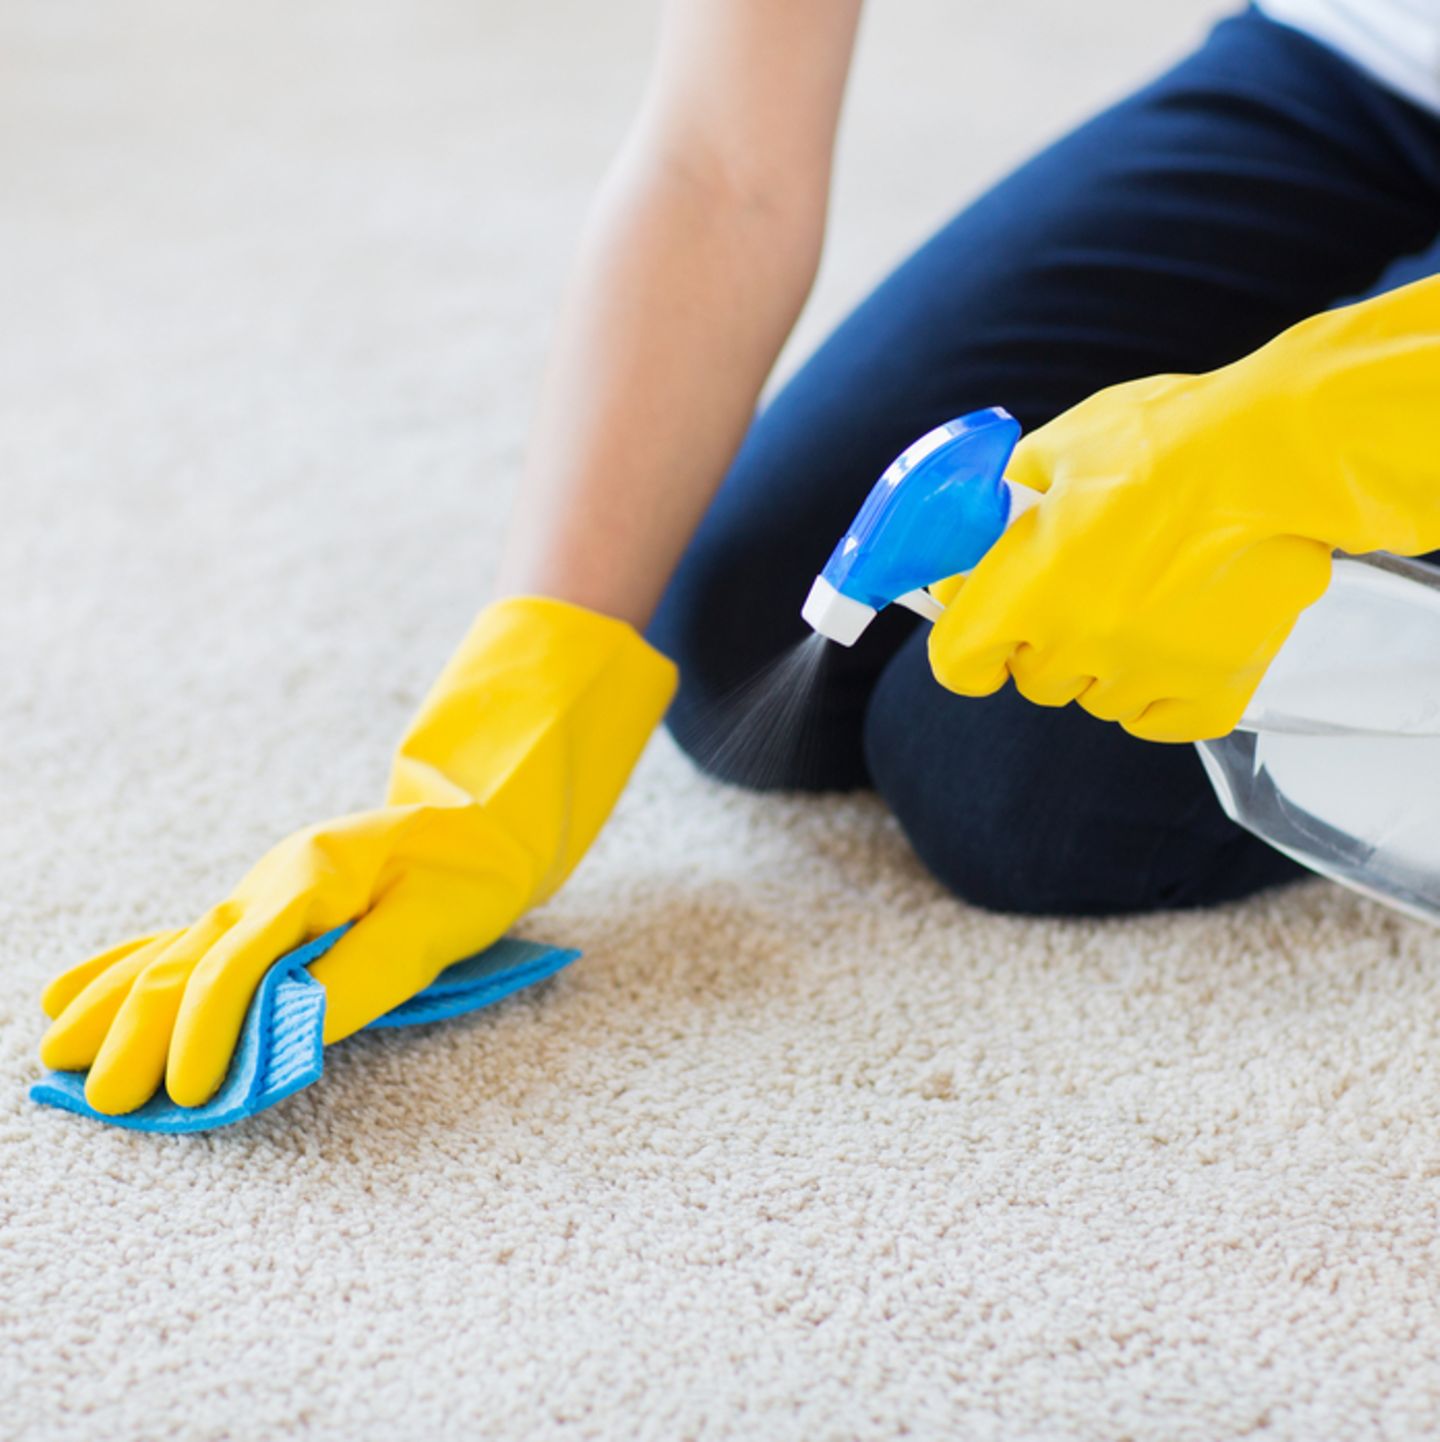 Teppich reinigen: praktische Tipps